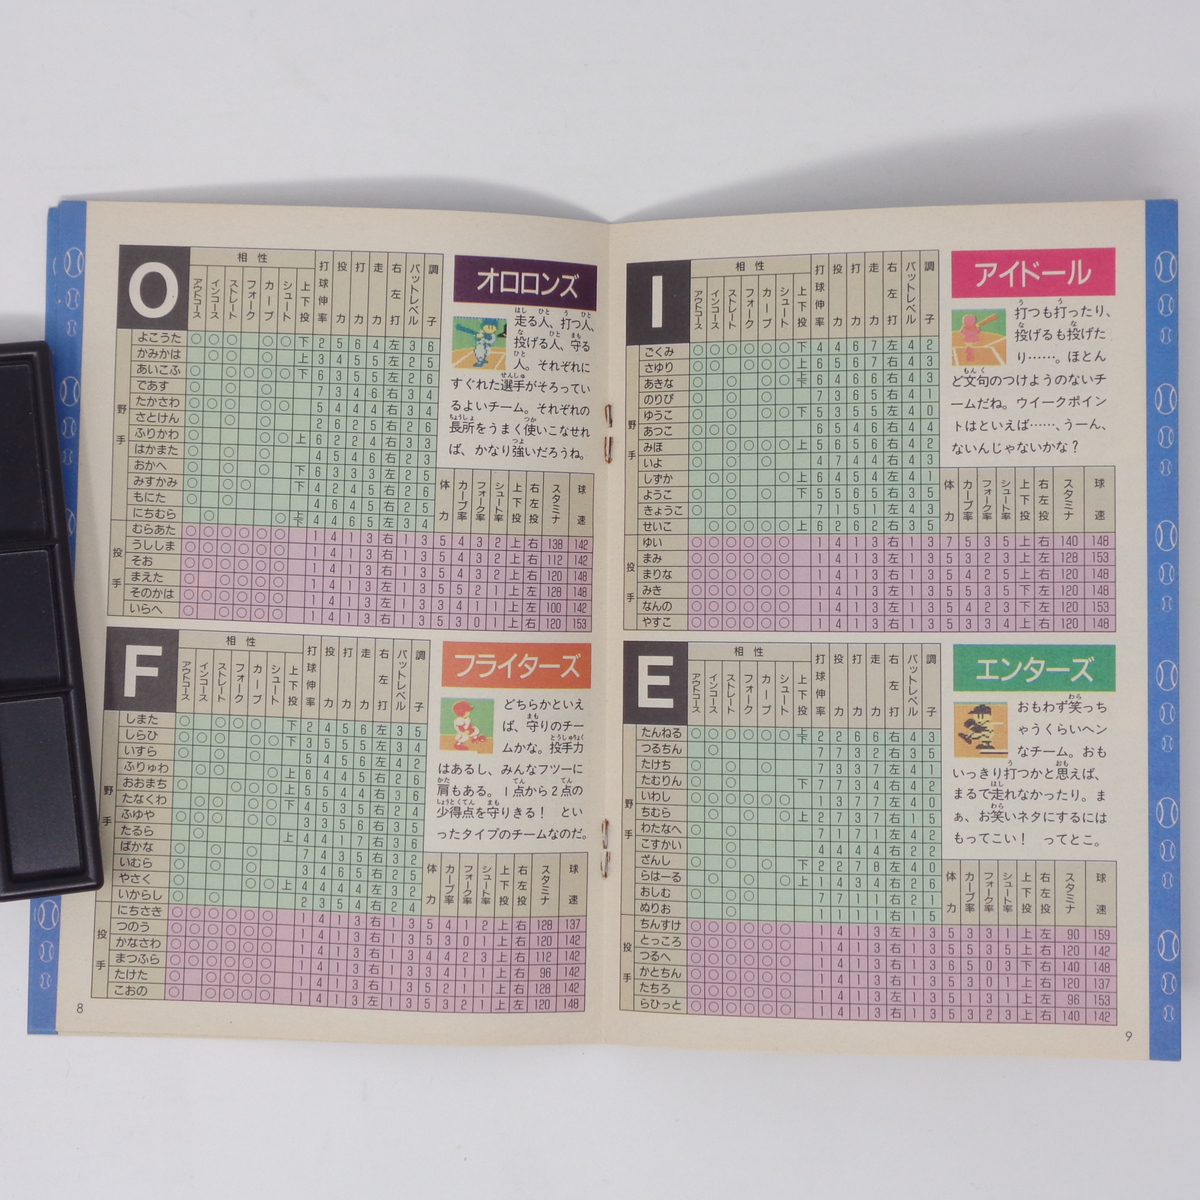  окончательный - li сверло Stadium эпоха Heisei изначальный год версия совершенно игрок данные & technique сборник Famicom сообщение 1989 год 8 месяц 4*18 день номер дополнение / игра журнал дополнение [Free Shipping]